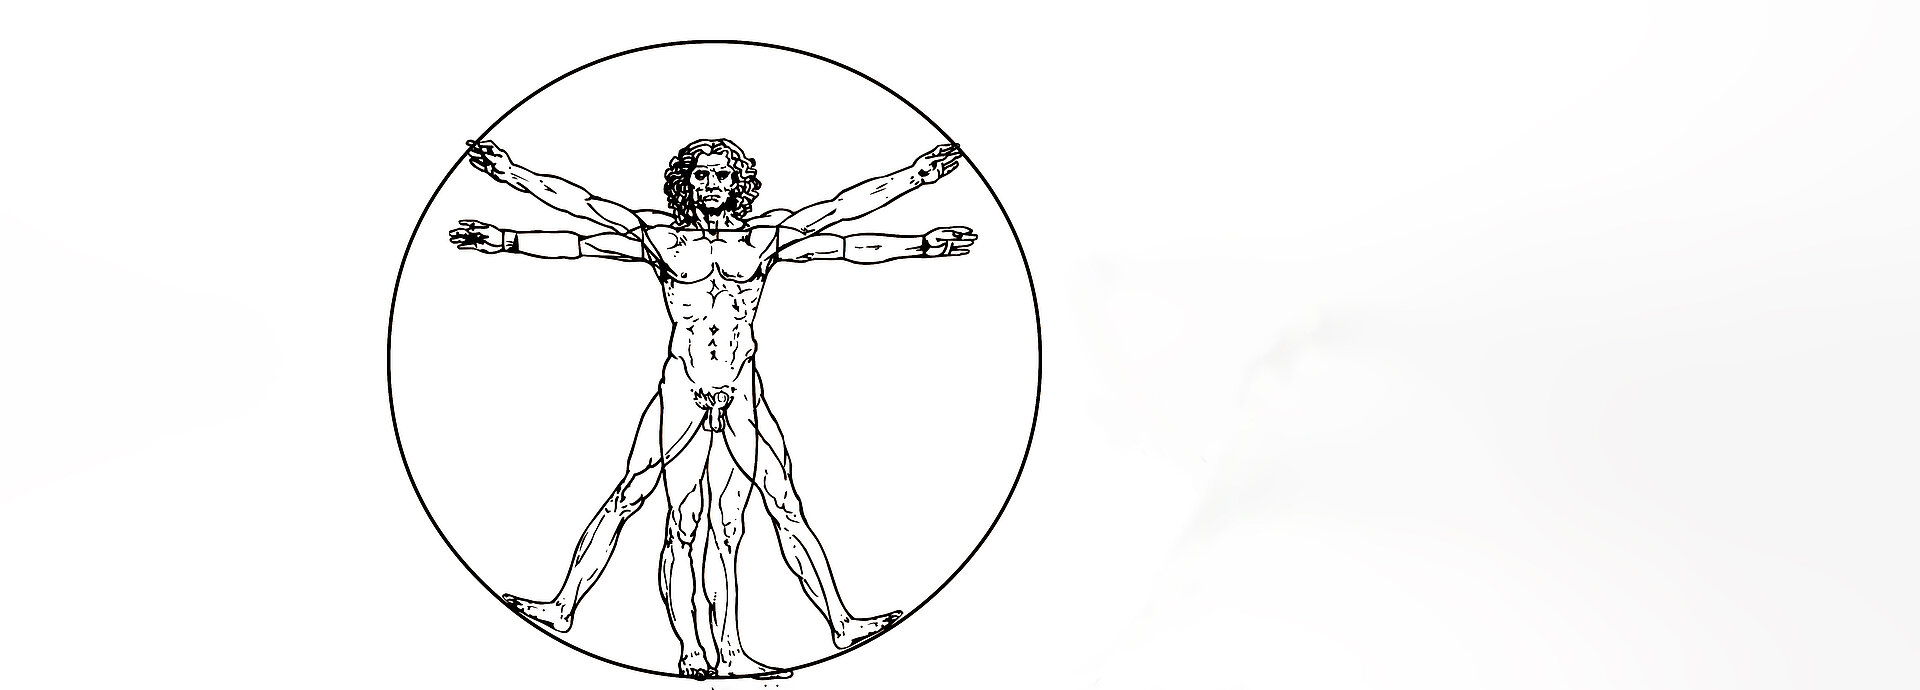 Grafik Vitruvianische Figur:  Darstellung des Mannes nach den vom antiken Architekten und Ingenieur Vitruv(ius) formulierten und idealisierten Proportionen.